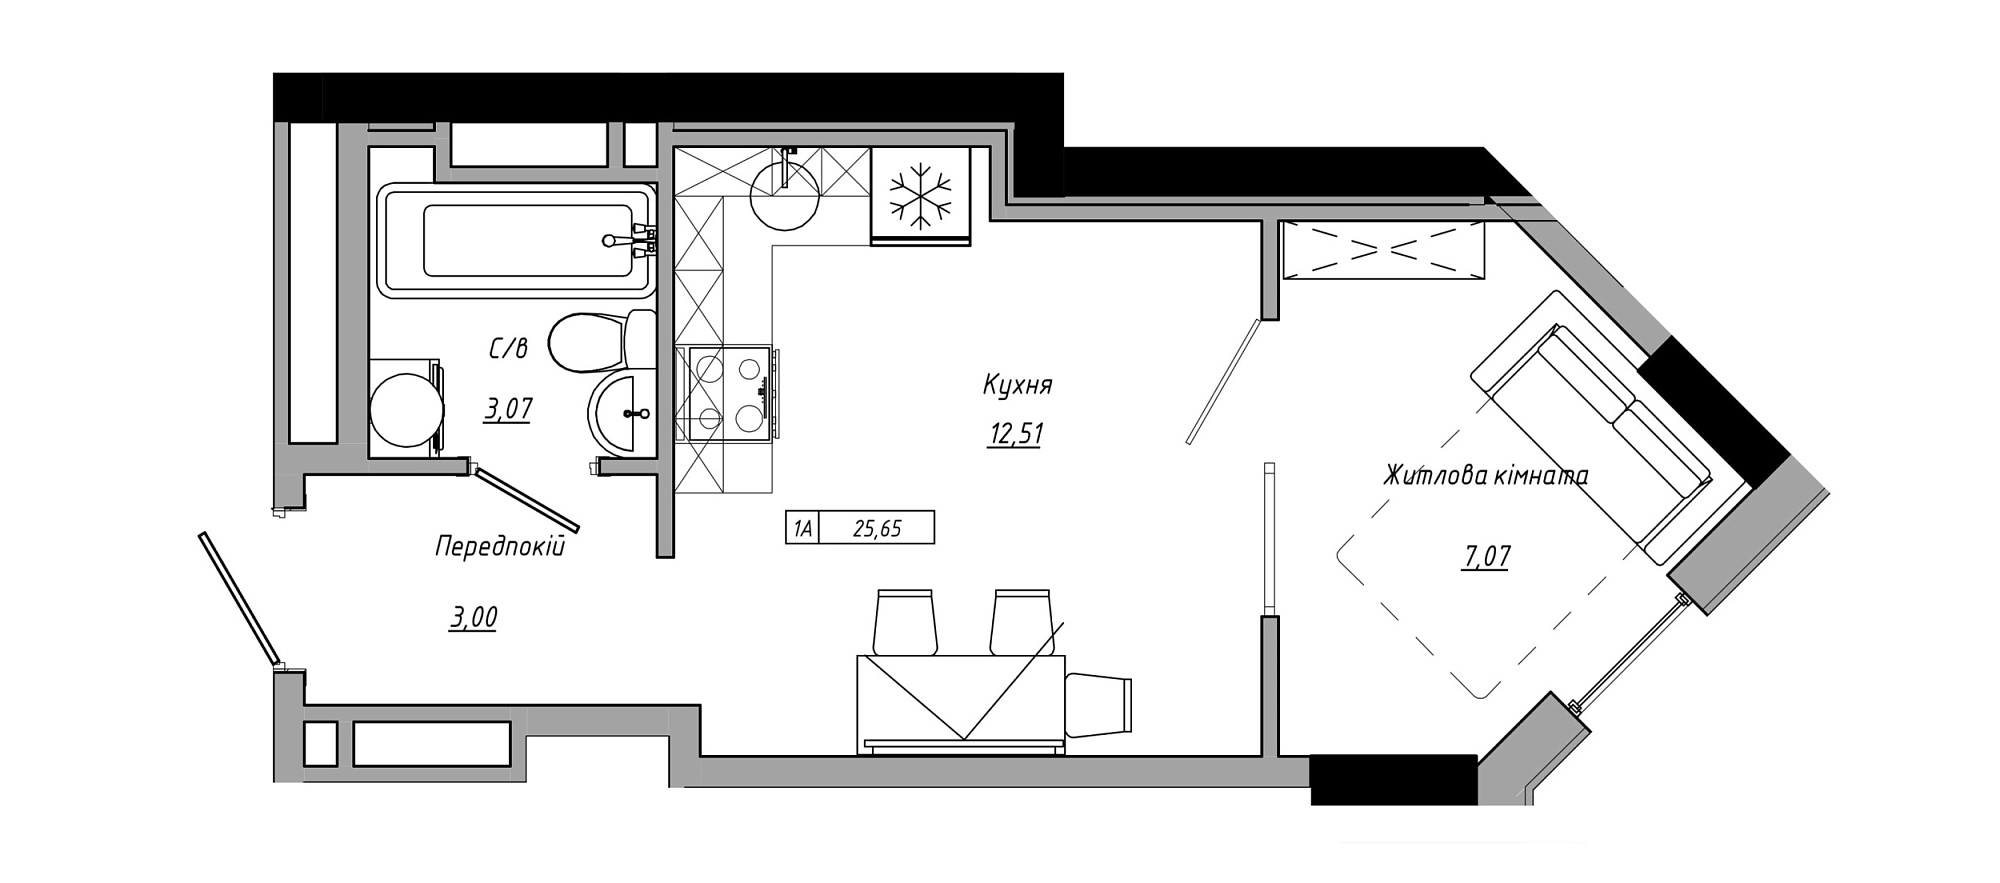 Планування 1-к квартира площею 25.65м2, AB-21-05/00001.